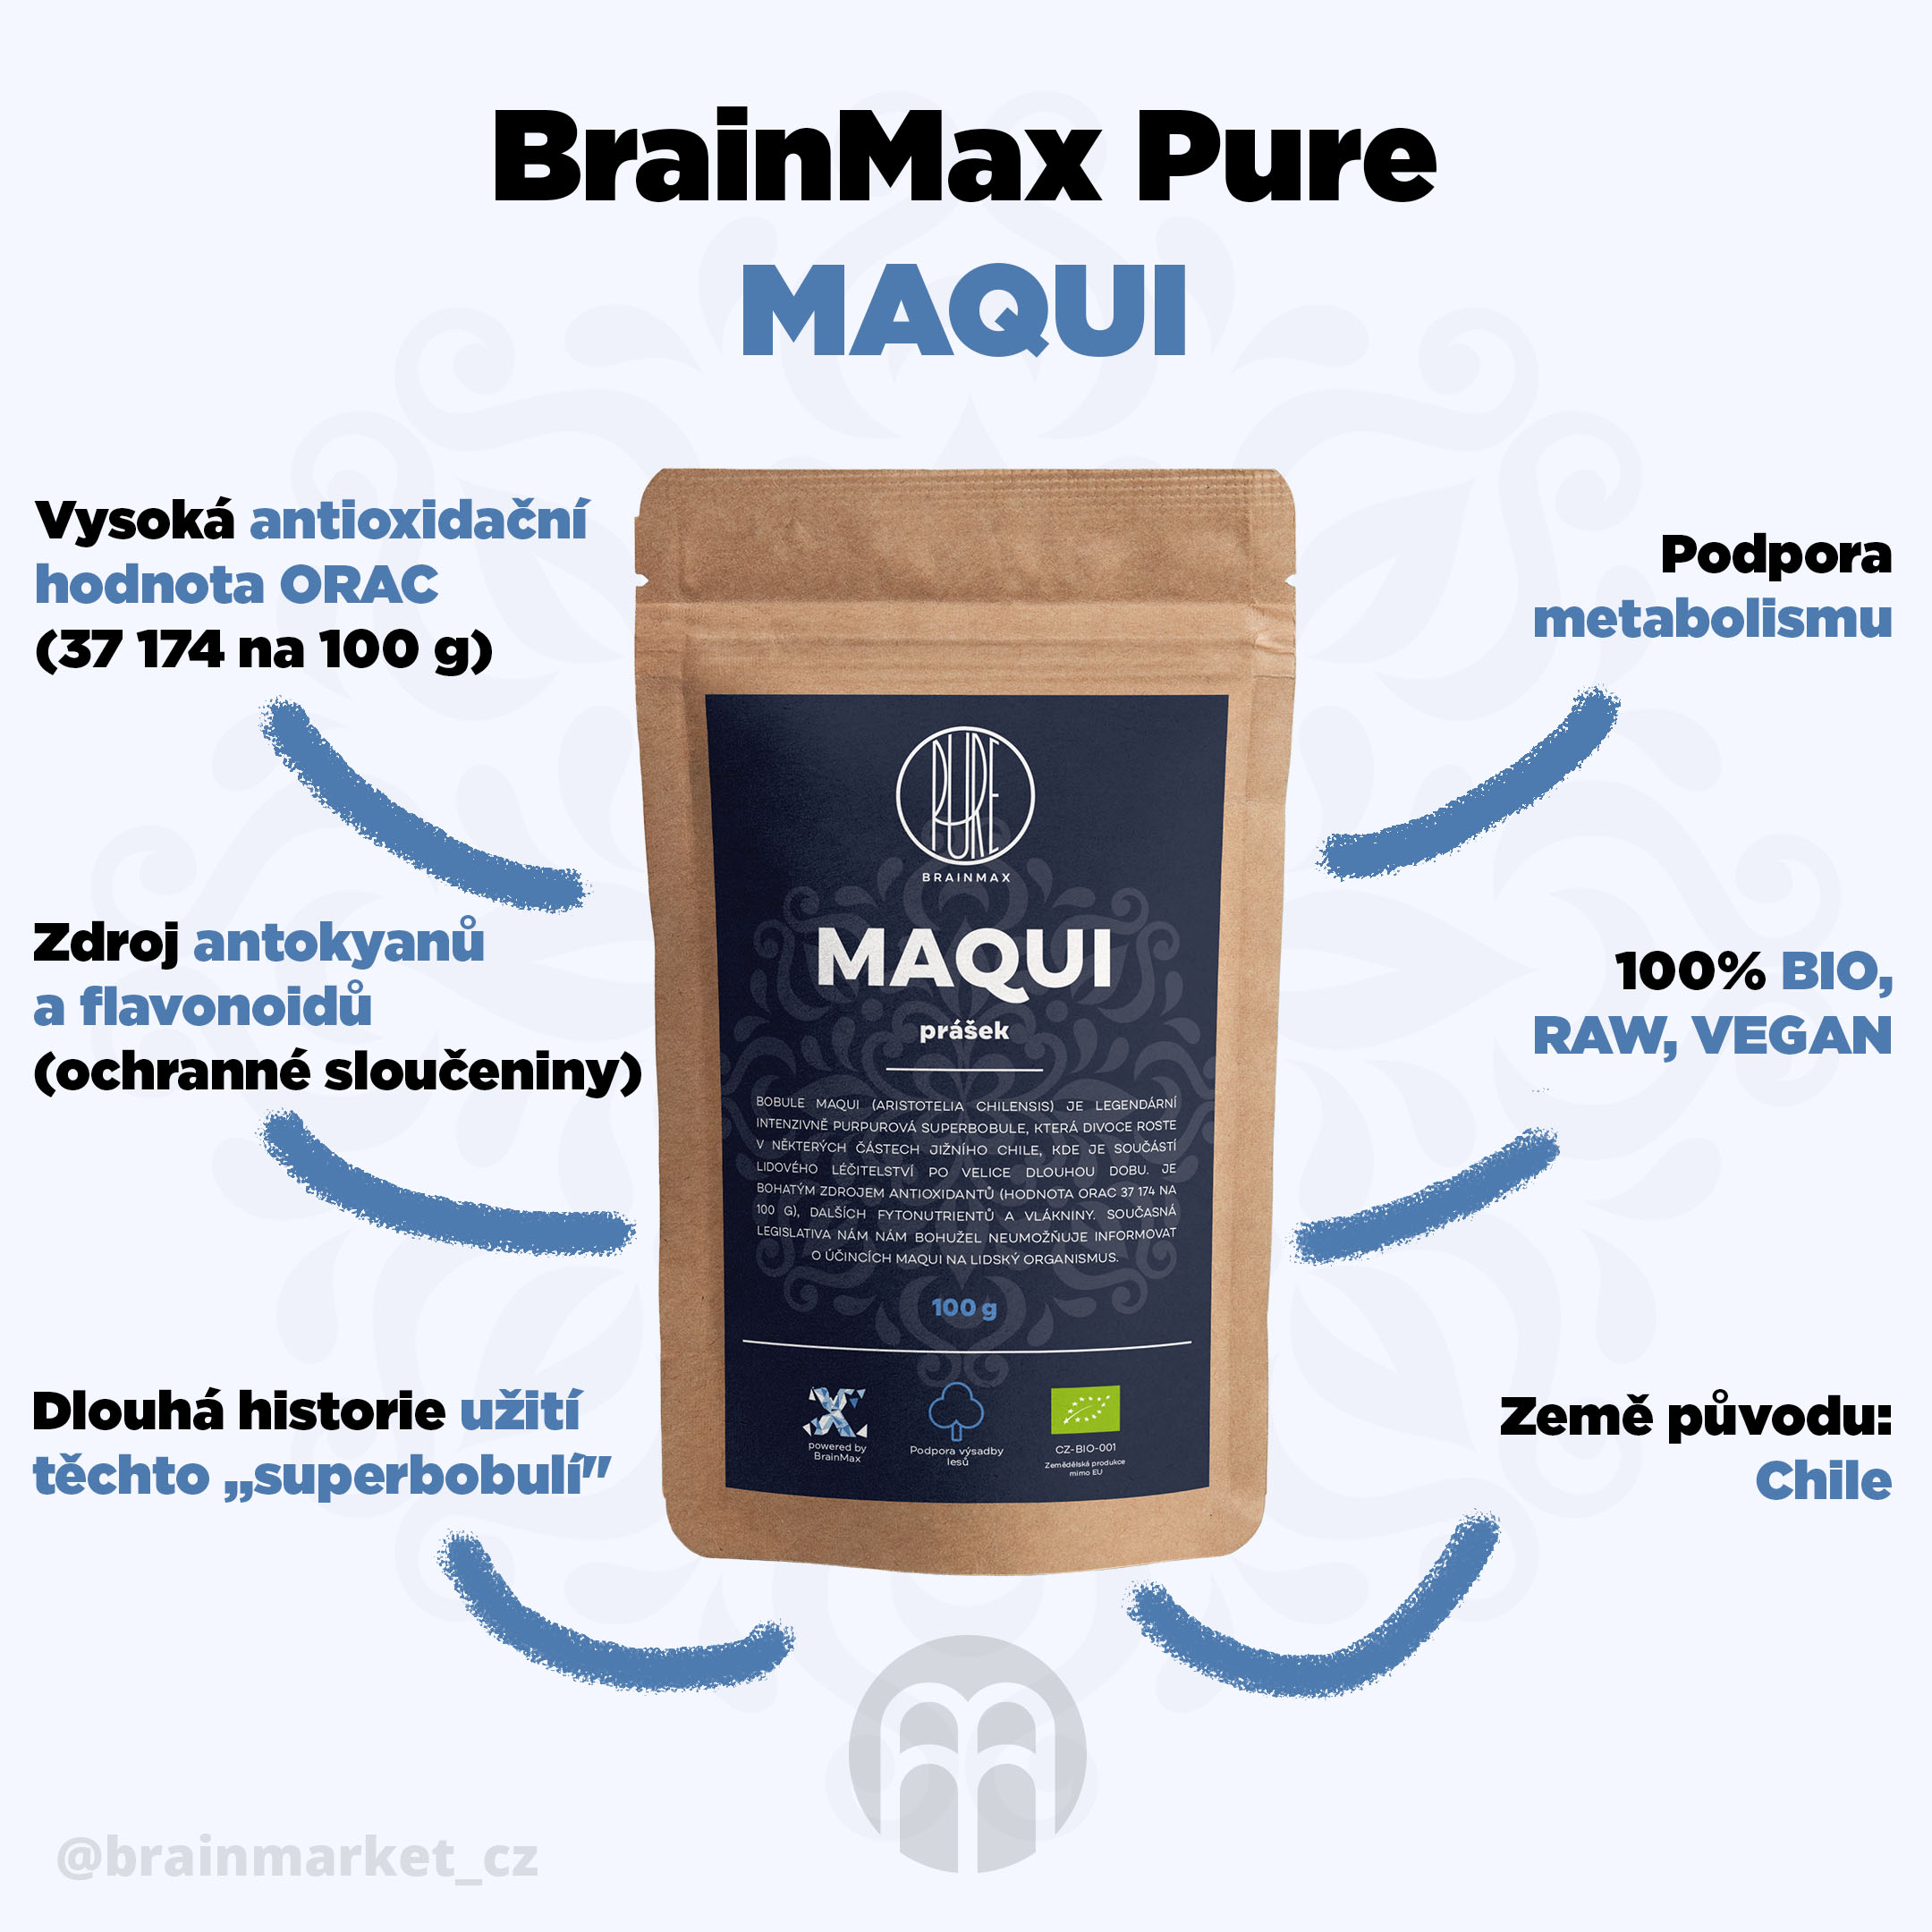 maqui_infografika_brainmarket_cz